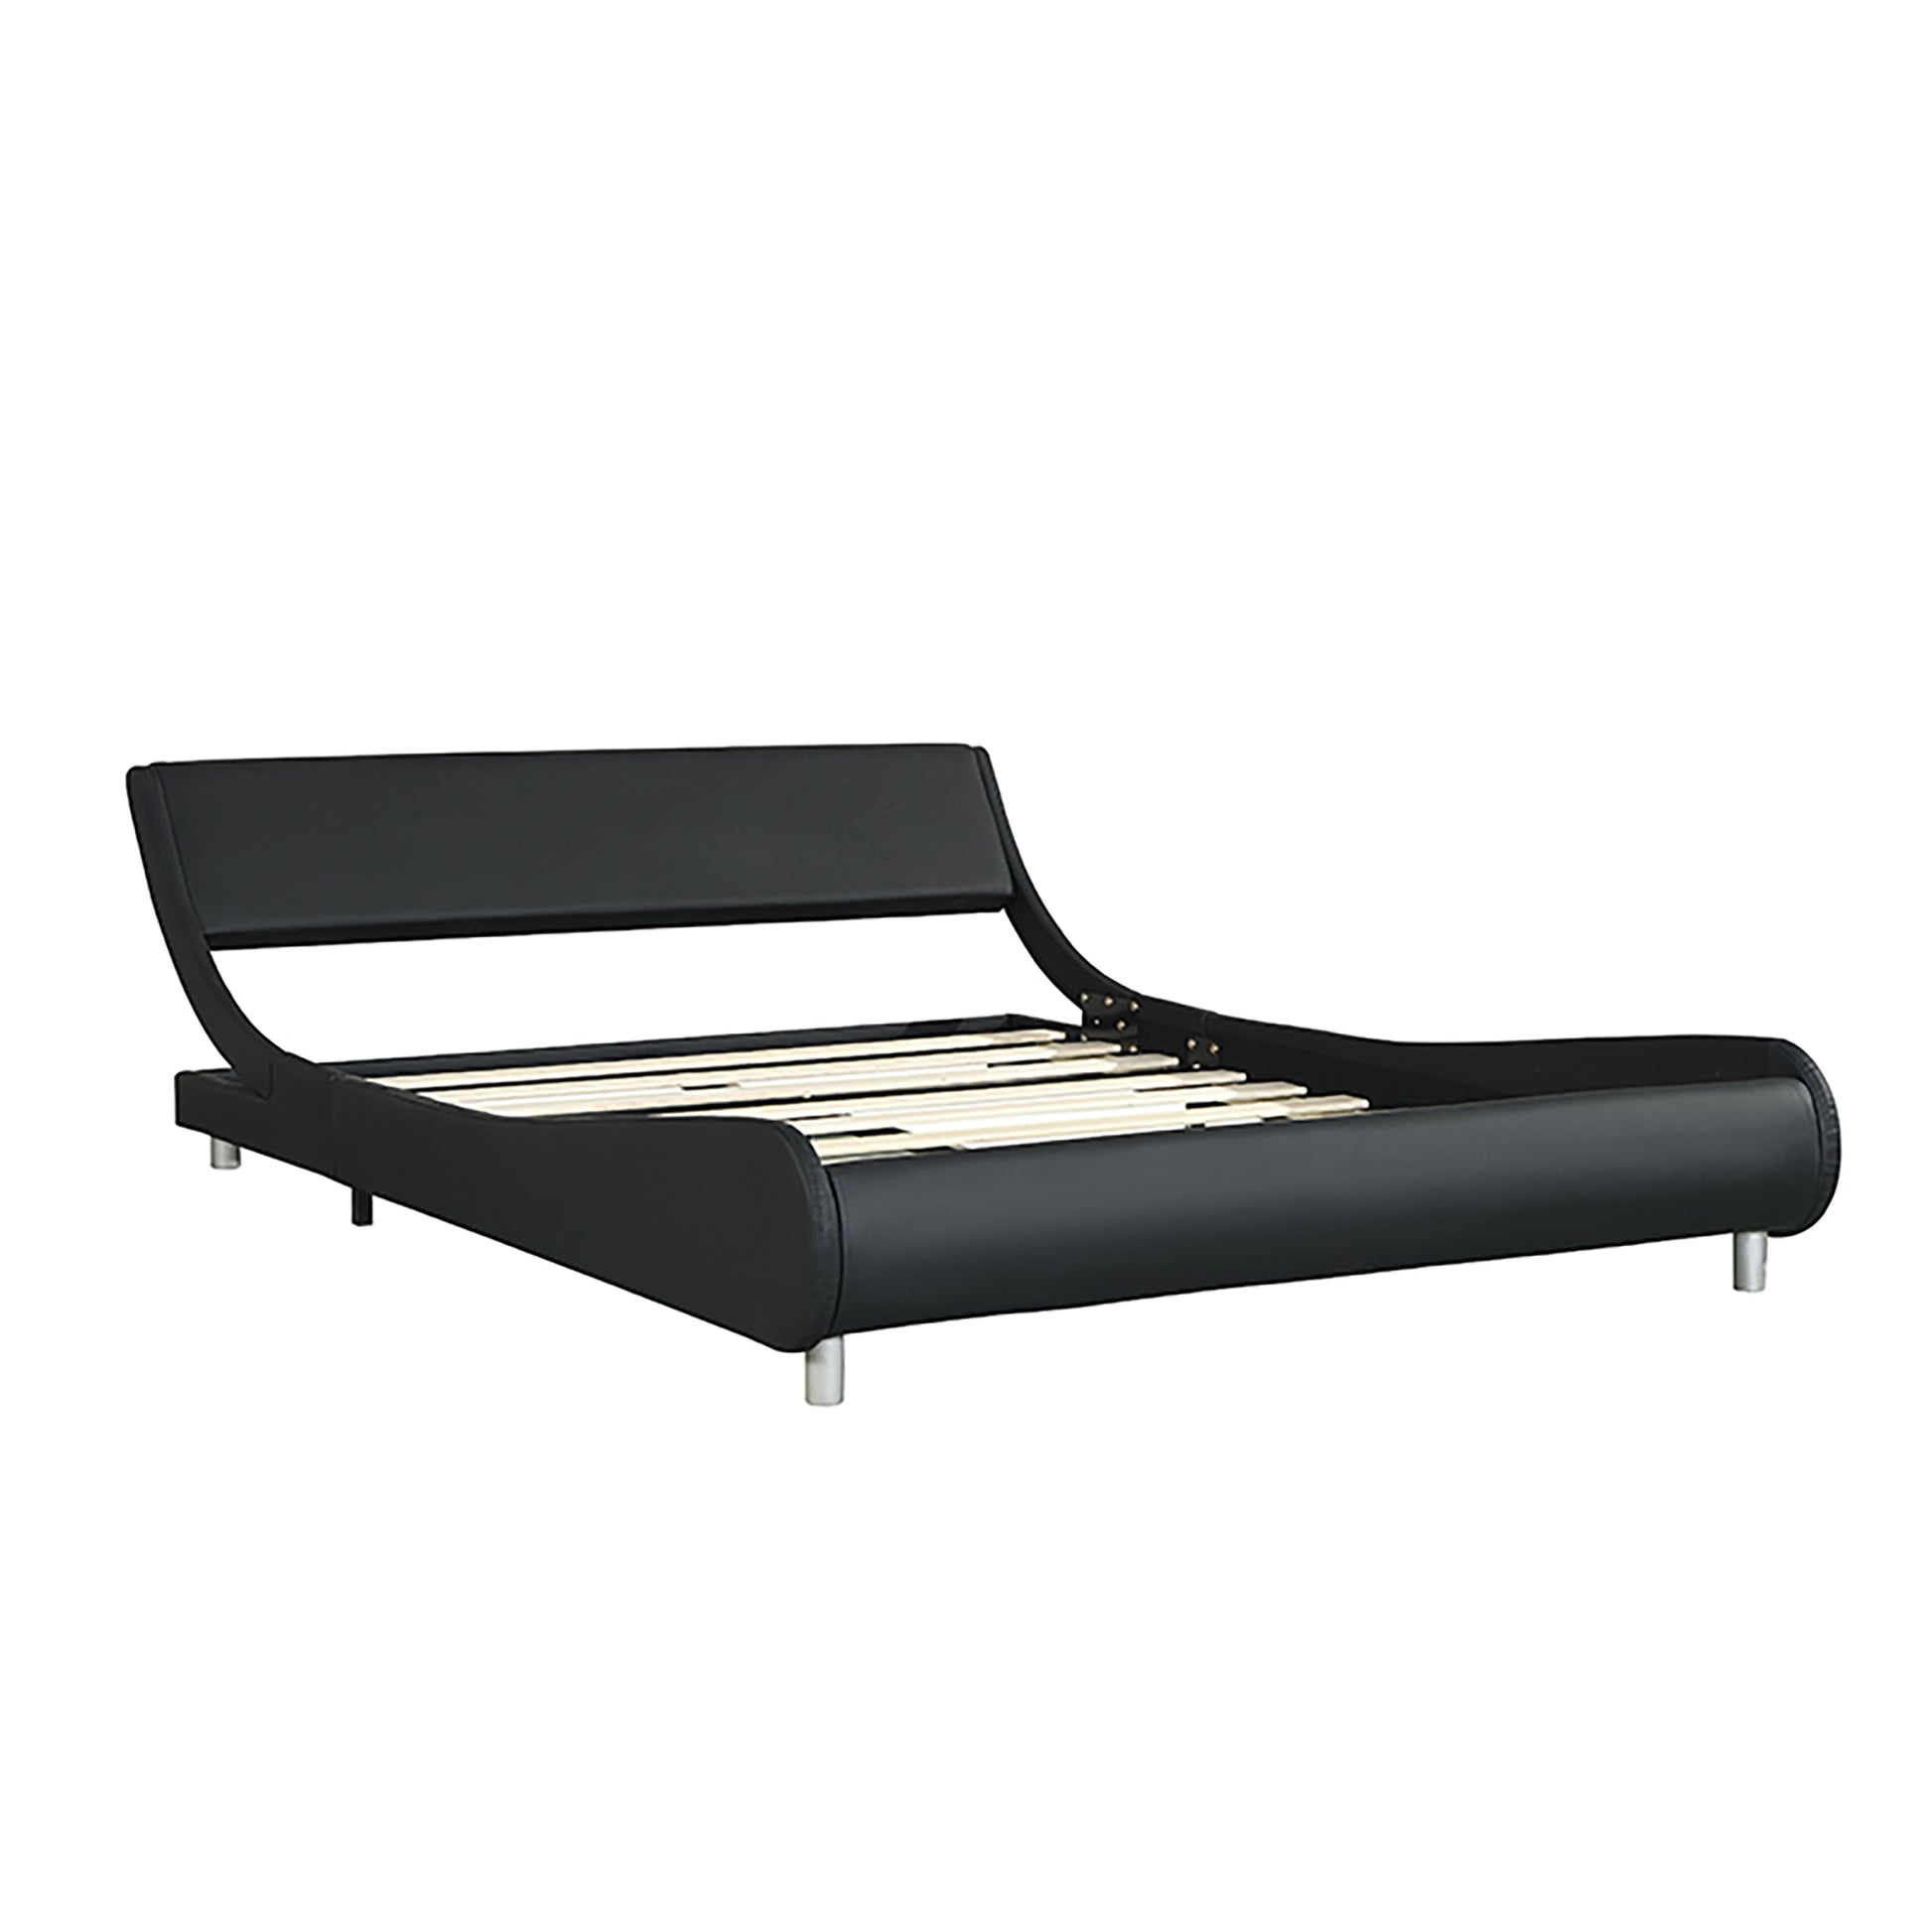 Faux Leather Upholstered Platform Bed Frame,Led -